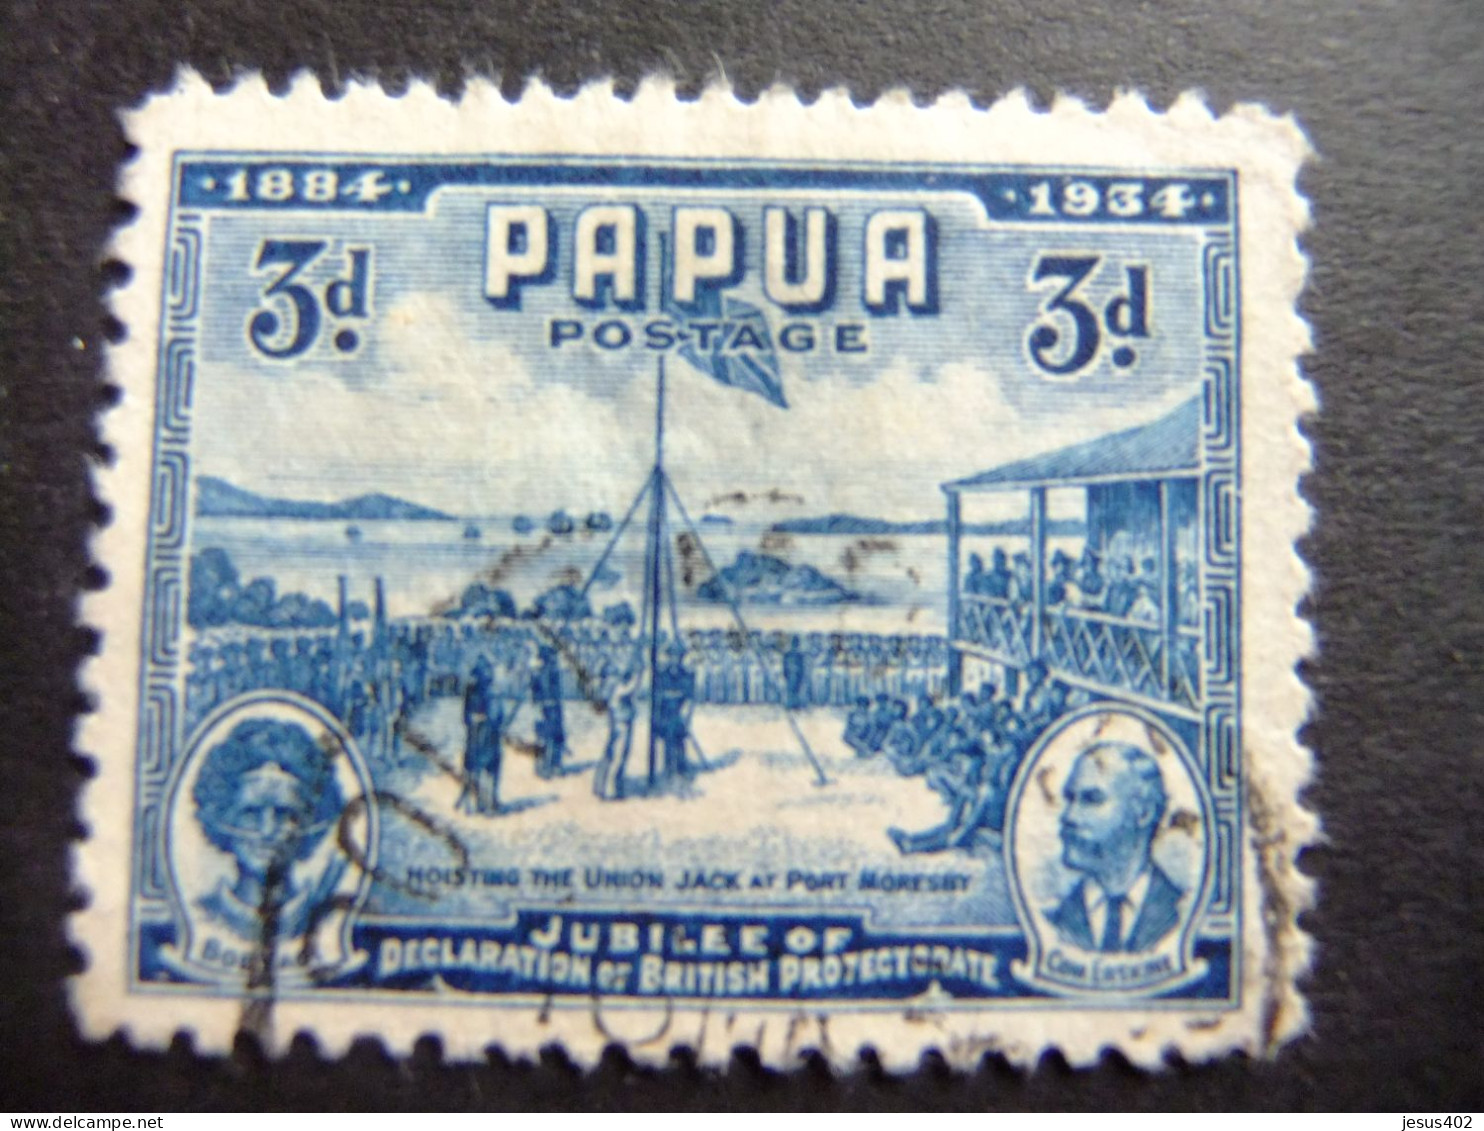 52 PAPUA NEW GUINEA PAPOUSIE 1934 / CINCUENTENARIO DEL PROTECTORADO BRITANICO / YVERT 99 FU Defec. - Papúa Nueva Guinea